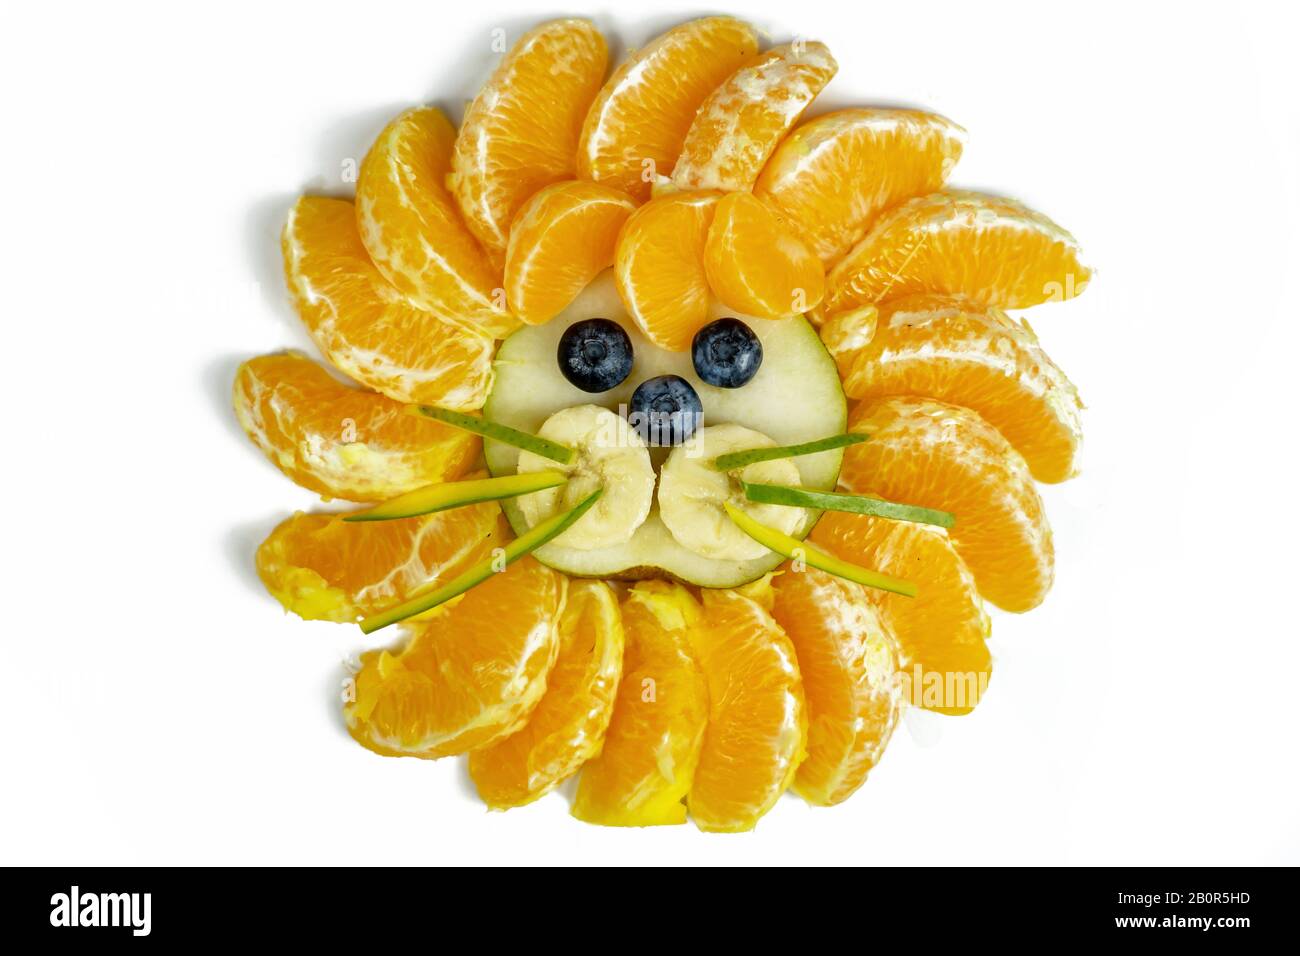 isolato divertente leone faccia composizione con frutti come arancio mirtillo Foto Stock